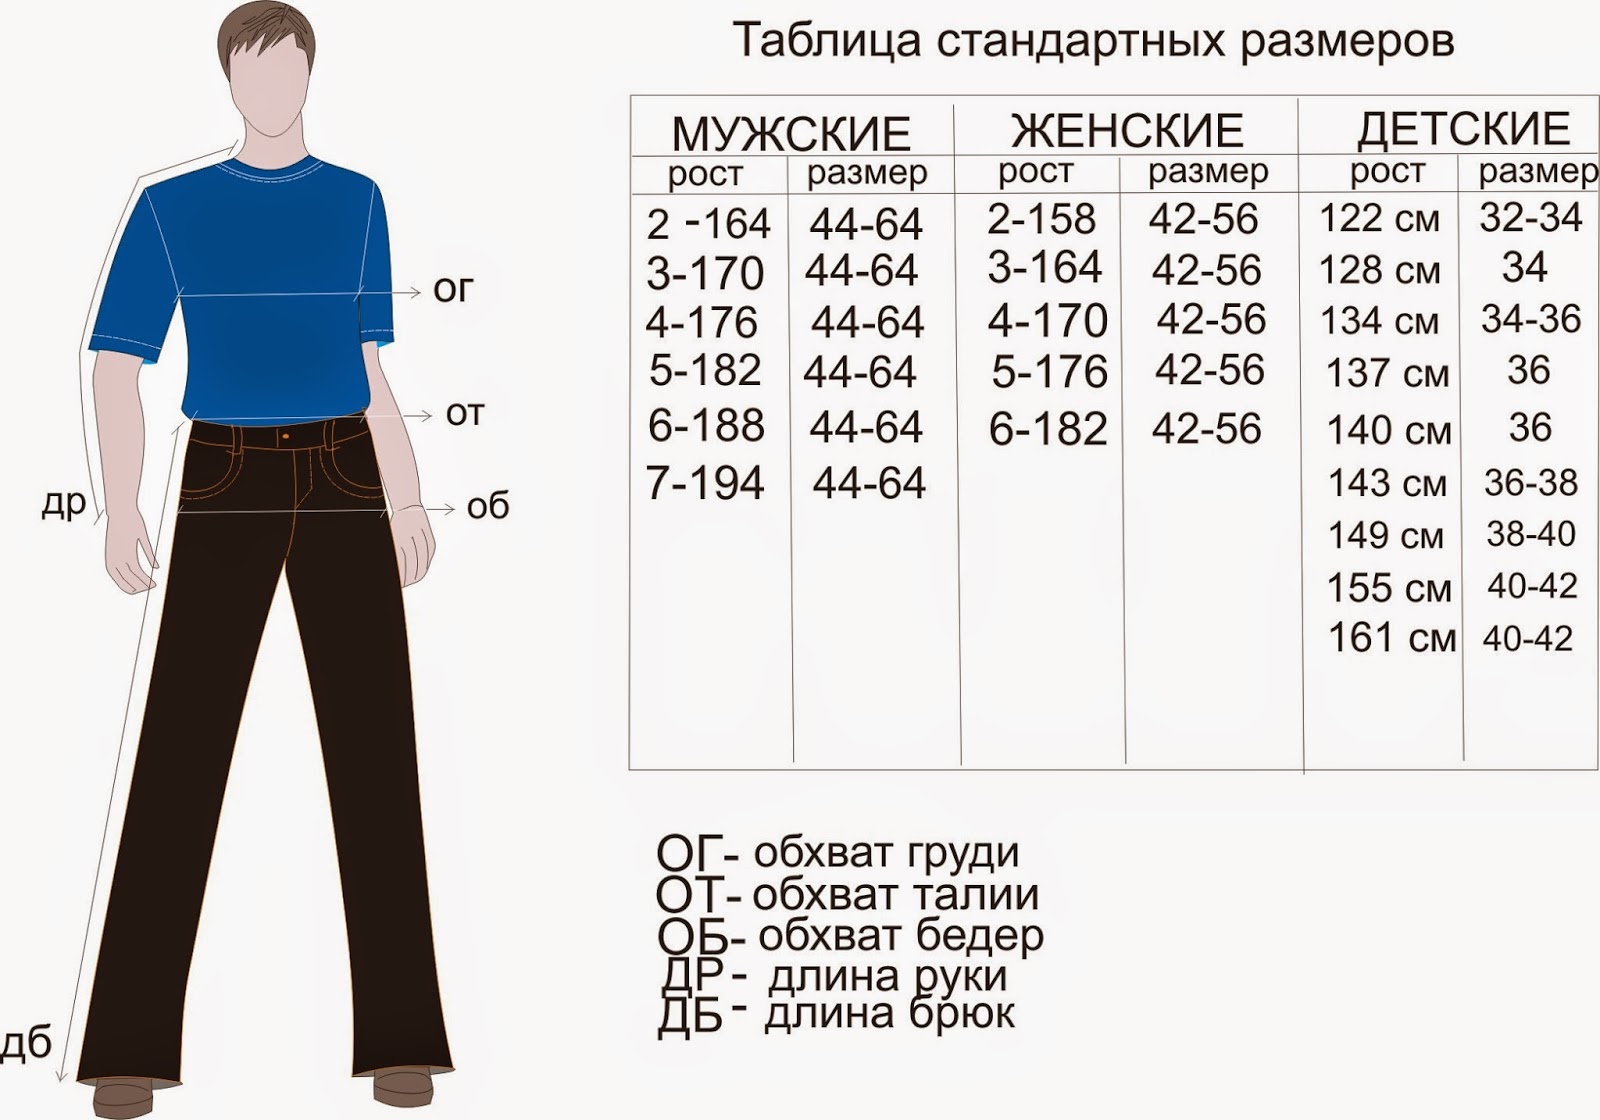 Размер классических брюк мужских. Размеры штанов мужских таблица на рост 176. Размер штанов на рост 170 мужские. Размеры штанов мужских таблица рост 182. Мужские брюки таблица размеров и роста.